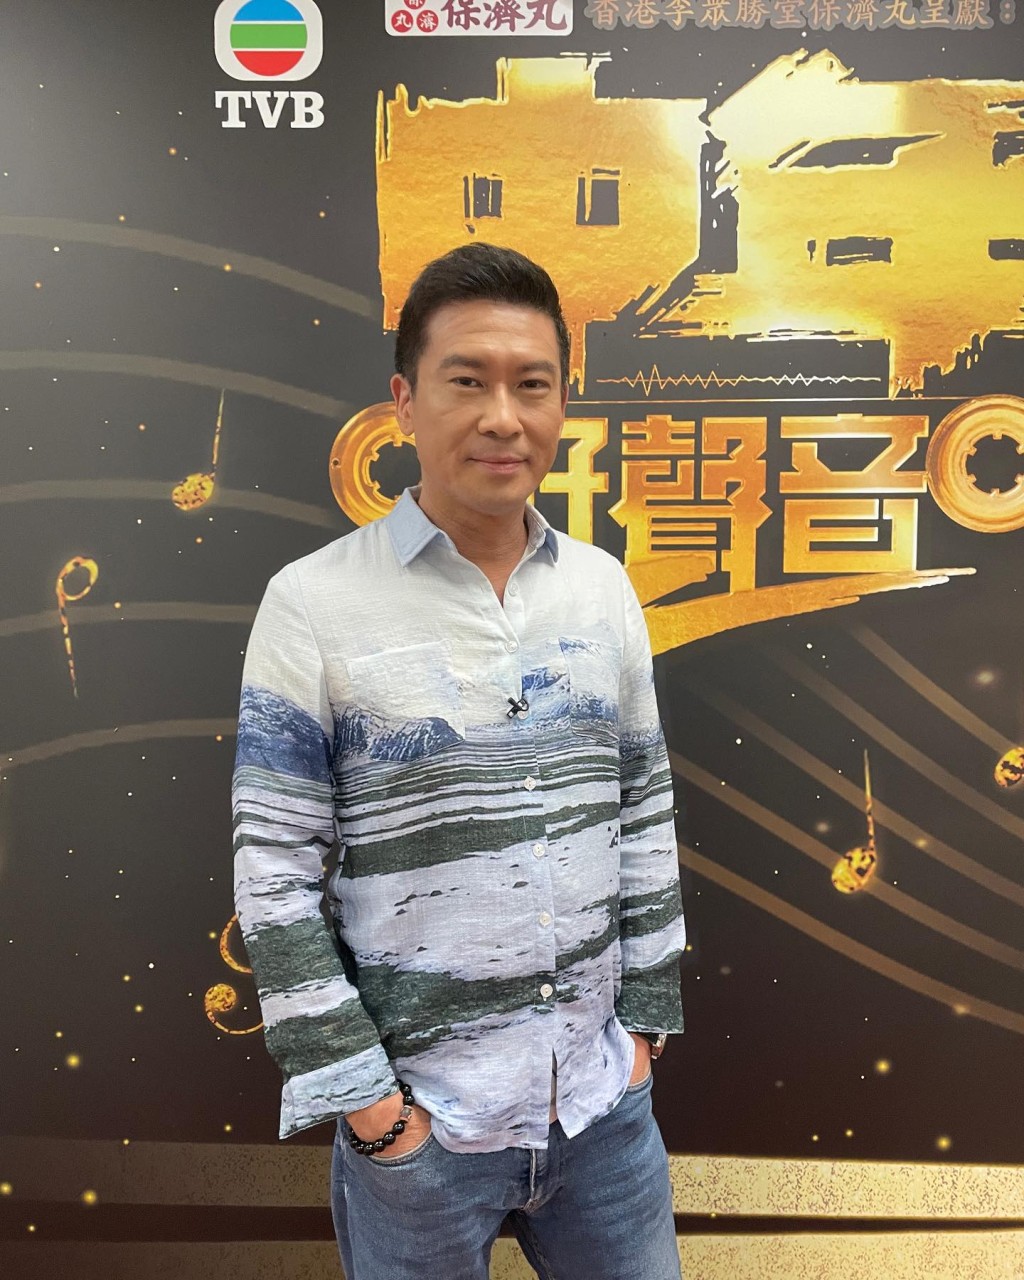  张佳添近年为TVB《中年好声音》担任评判再受关注。